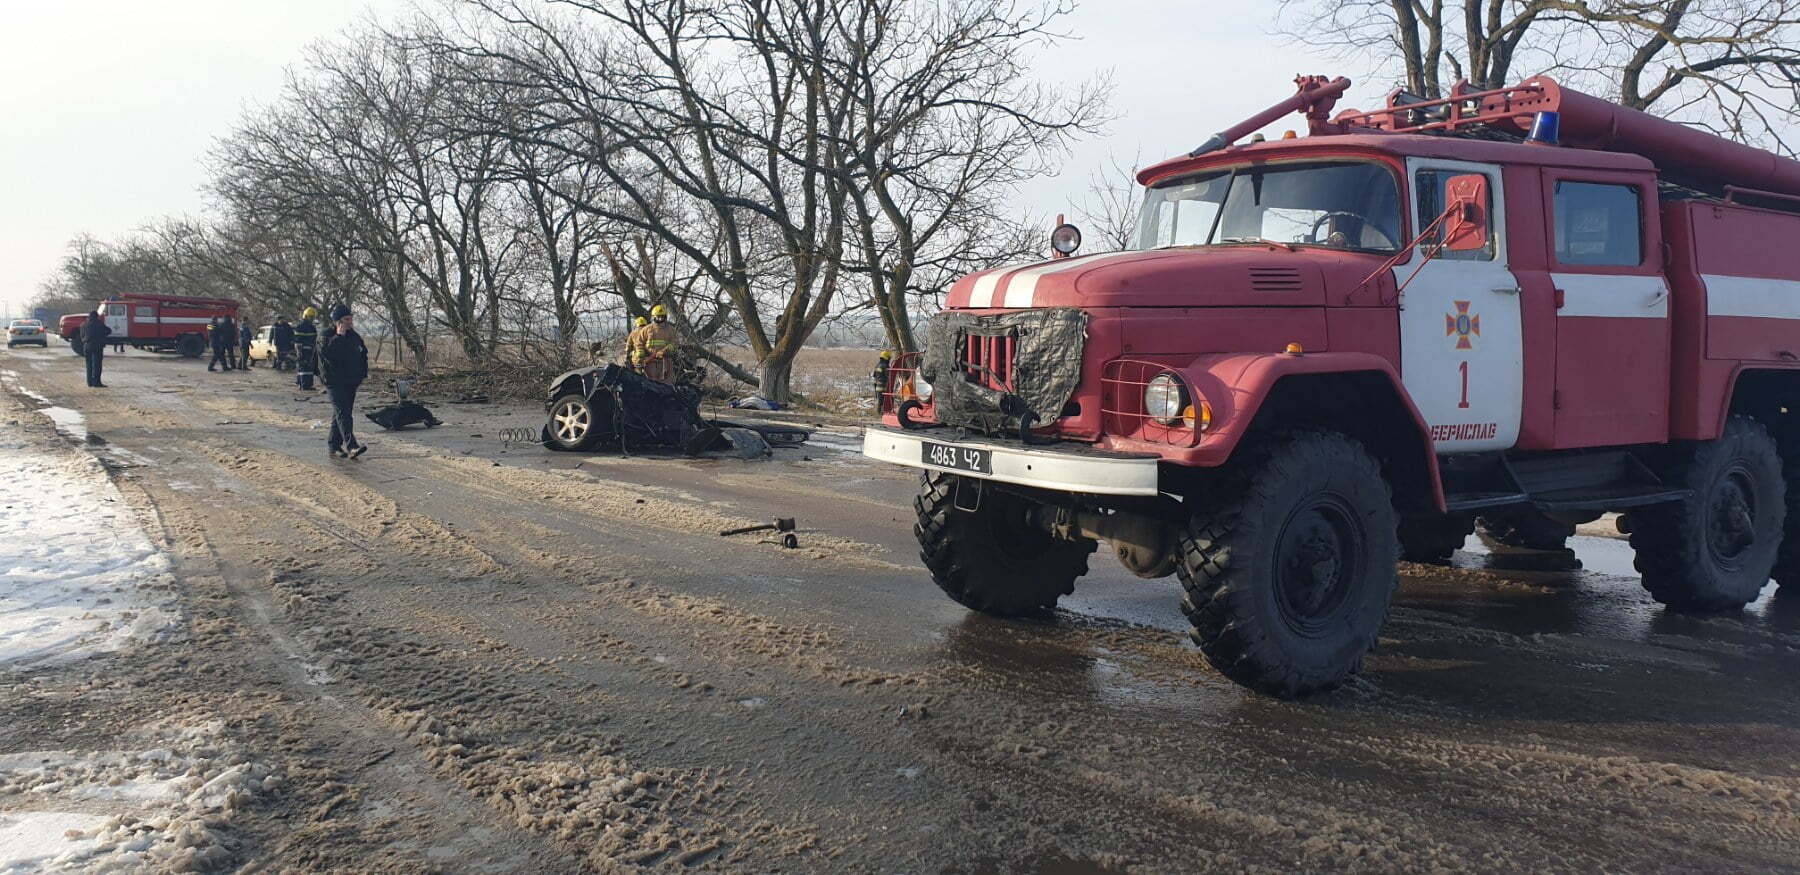 Херсонська область: рятувальники ліквідовували наслідки ДТП, в якій загинуло 2 людей